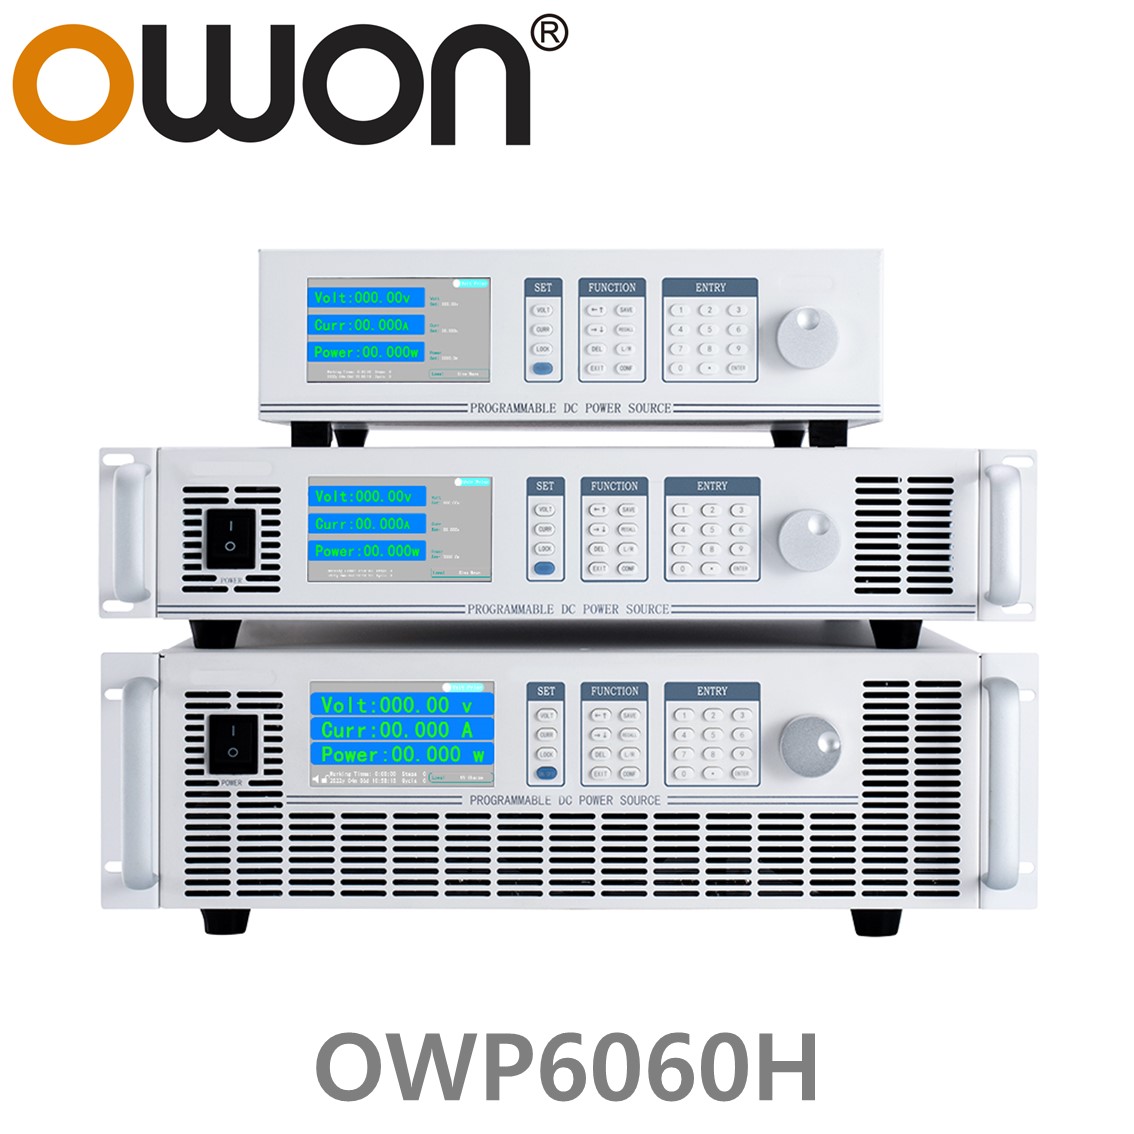 [ OWON ] OWP6060H 고전력 DC파워서플라이, 0-600.00V / 0-17.000A / 6000.0W DC전원공급장치